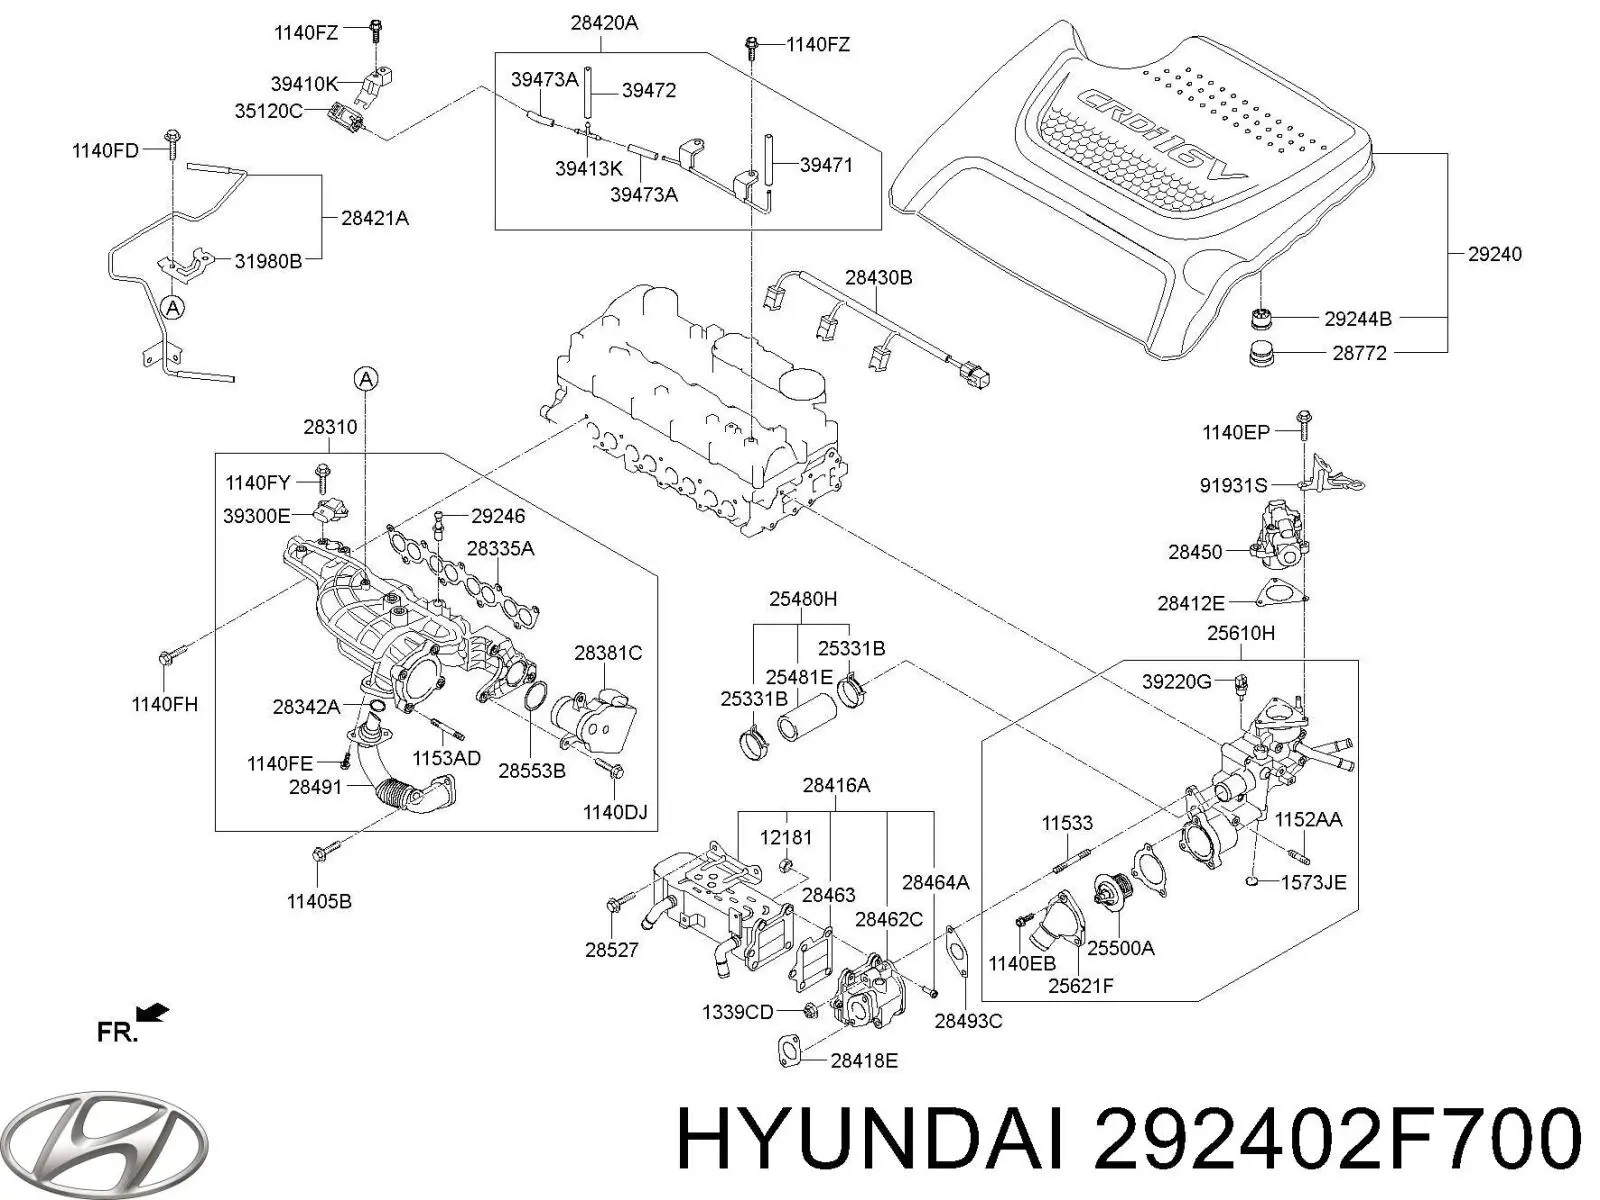 292402F700 Hyundai/Kia cubierta de motor decorativa